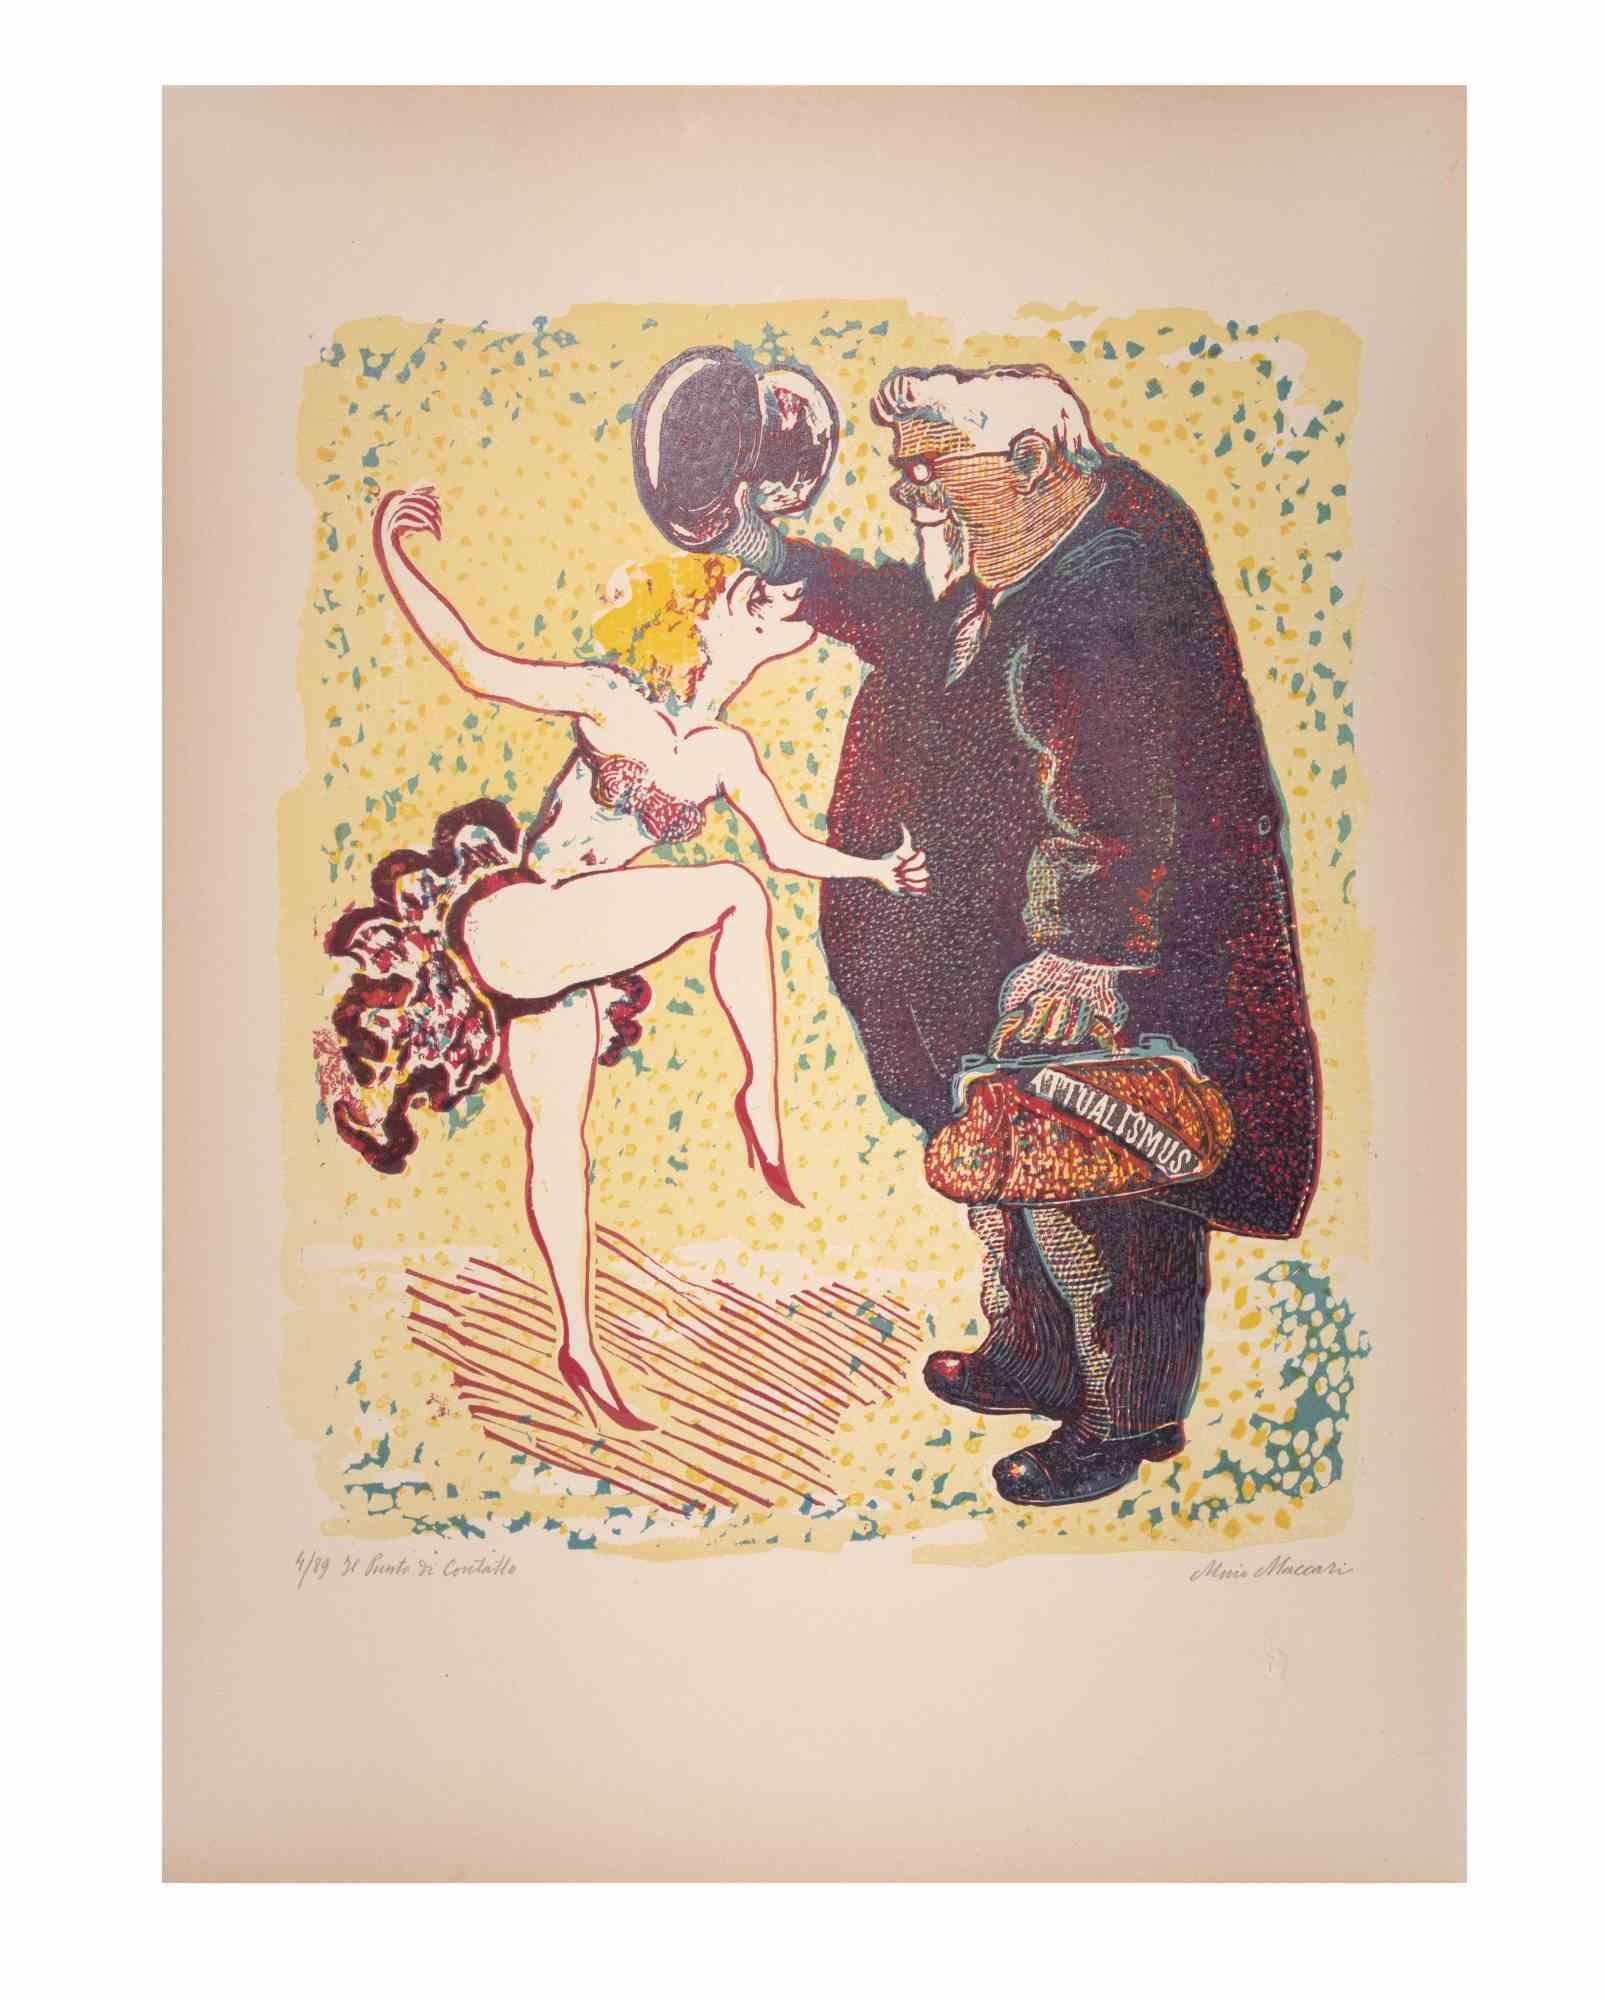 Der Berührungspunkt ist ein Kunstwerk von Mino Maccari (1924-1989) aus der Mitte des 20. Jahrhunderts.

Farbiger Holzschnitt auf Papier. Unten handsigniert, nummeriert 4/89 Exemplare und am linken Rand betitelt.

Gute Bedingungen.

Mino Maccari